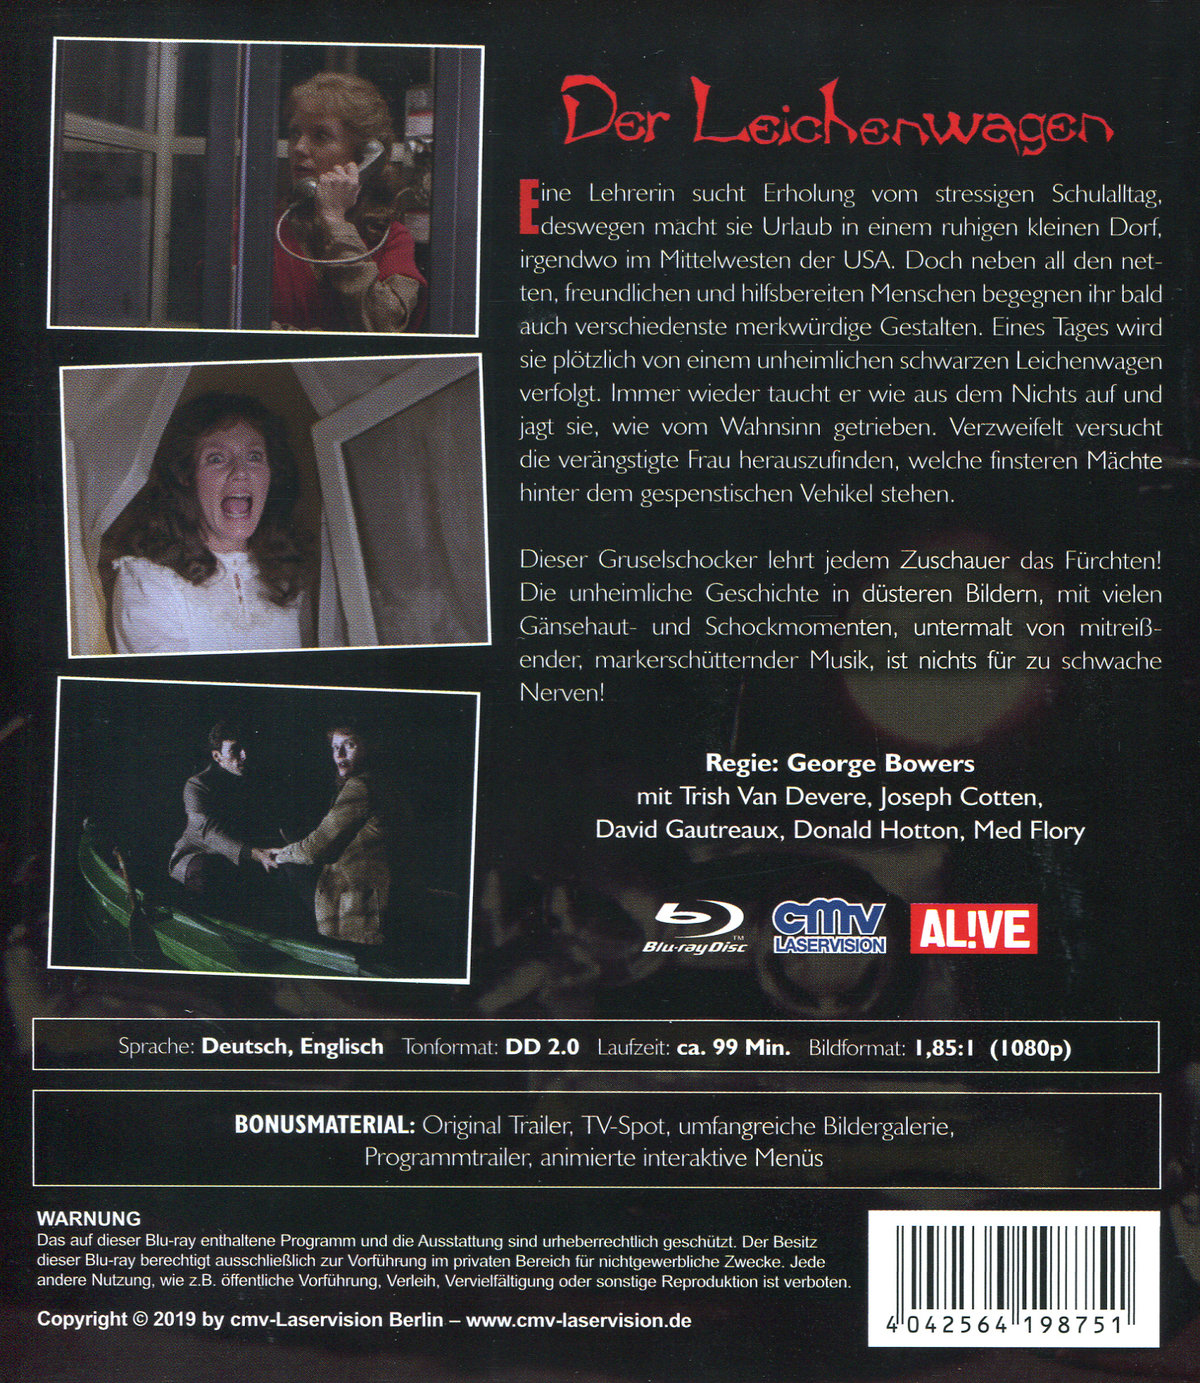 Leichenwagen, Der - Uncut Edition (blu-ray)